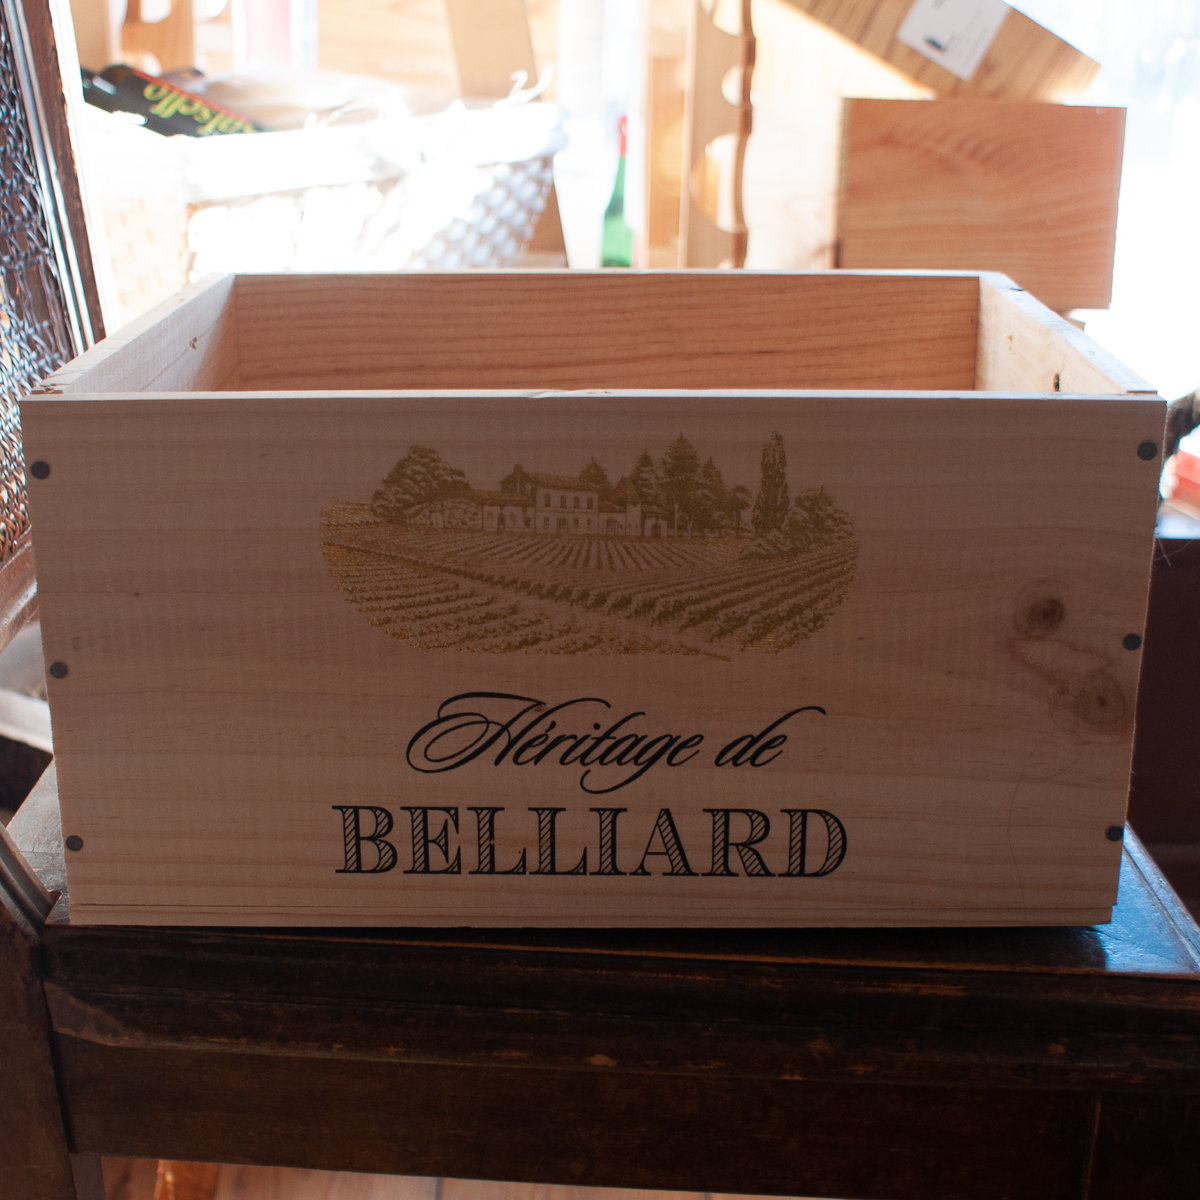 Original wine wooden case for 6 bottles from Heritage de Belliard